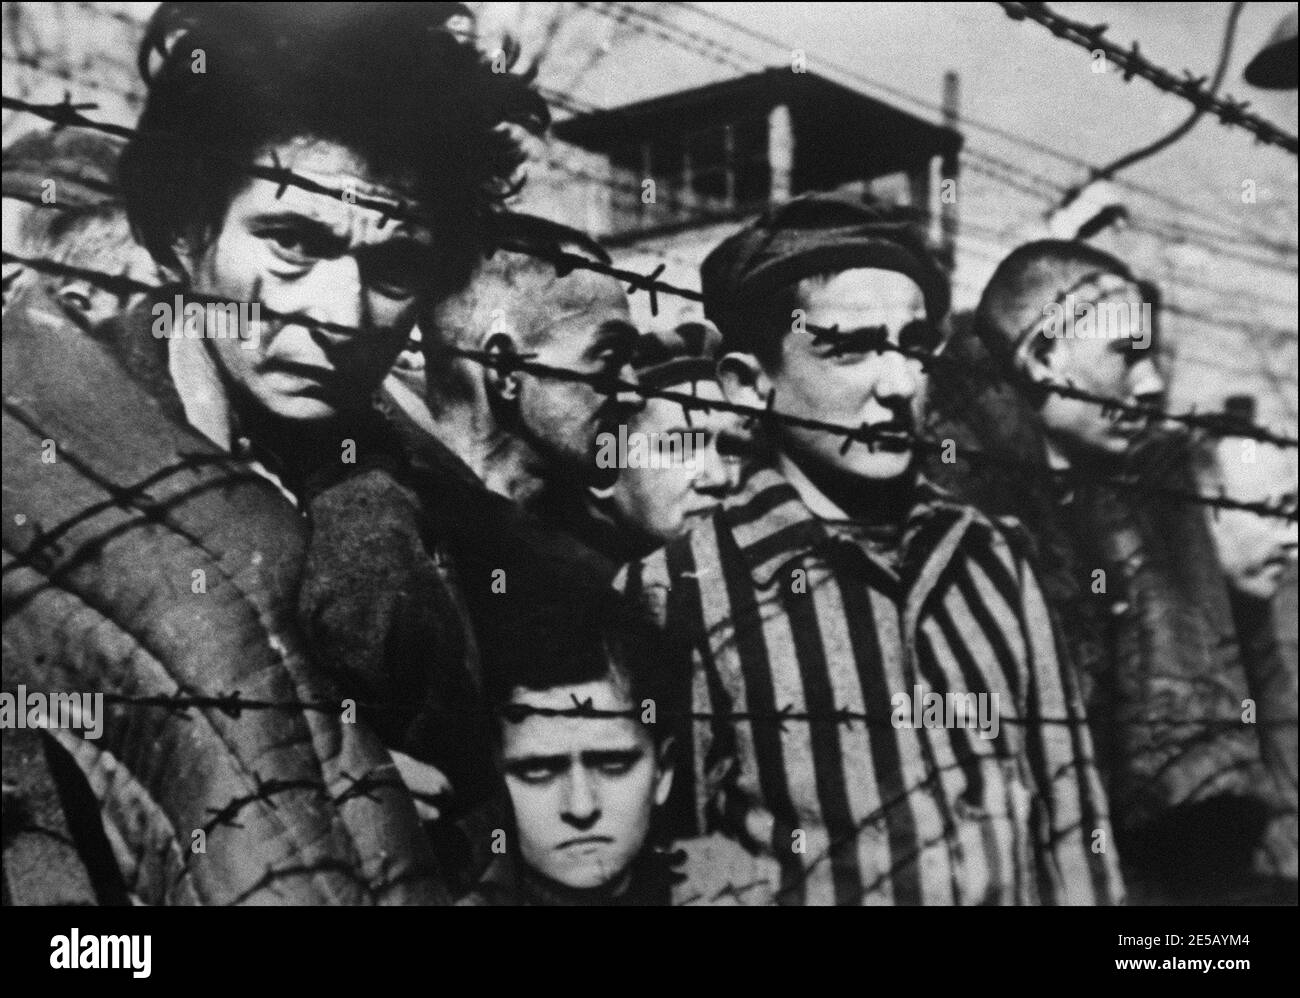 Ein Bild von Häftlingen hinter Stacheldraht, das 1945 aufgenommen wurde, als das Konzentrationslager Auschwitz in Polen befreit wurde, wo Millionen jüdischer Deportierter während des Zweiten Weltkriegs von den nazis vernichtet wurden Dieses Foto ist ein Ausschnitt aus dem sowjetischen Film 'Auschwitz' der sowjetischen Filmregisseurin Elizaveta Svilova (1945) Stockfoto